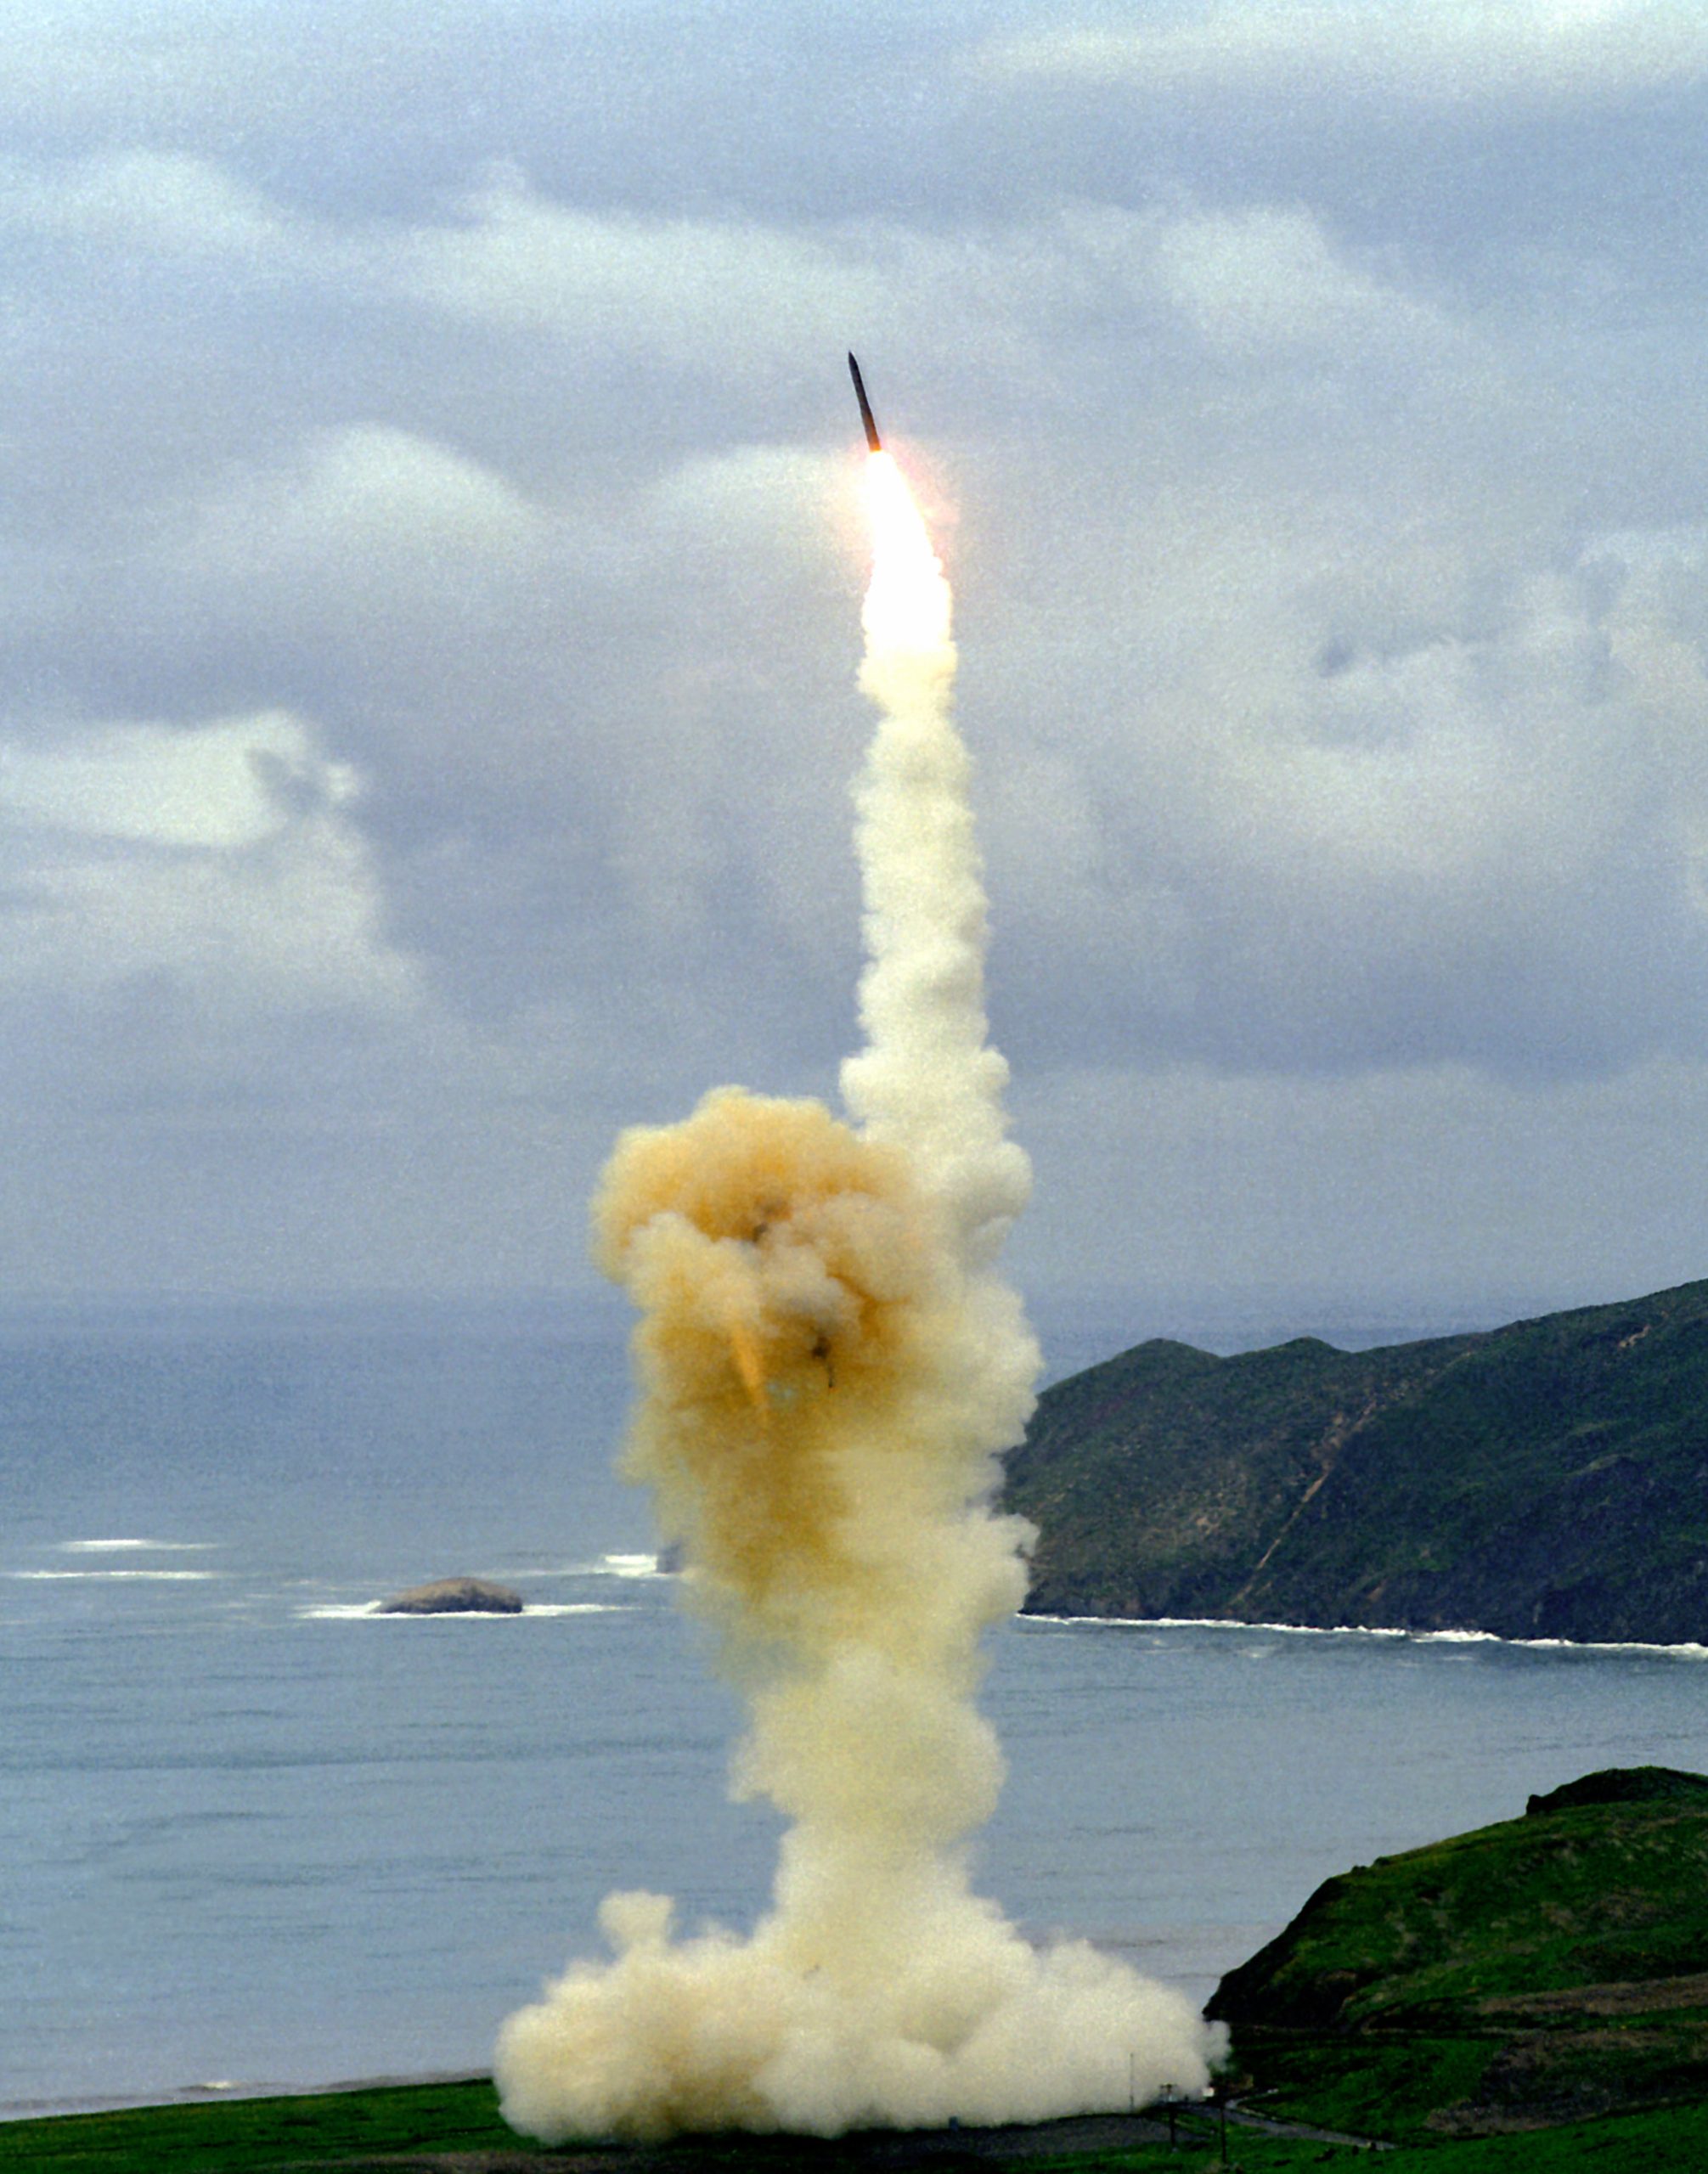 Corea del Norte lanza misiles